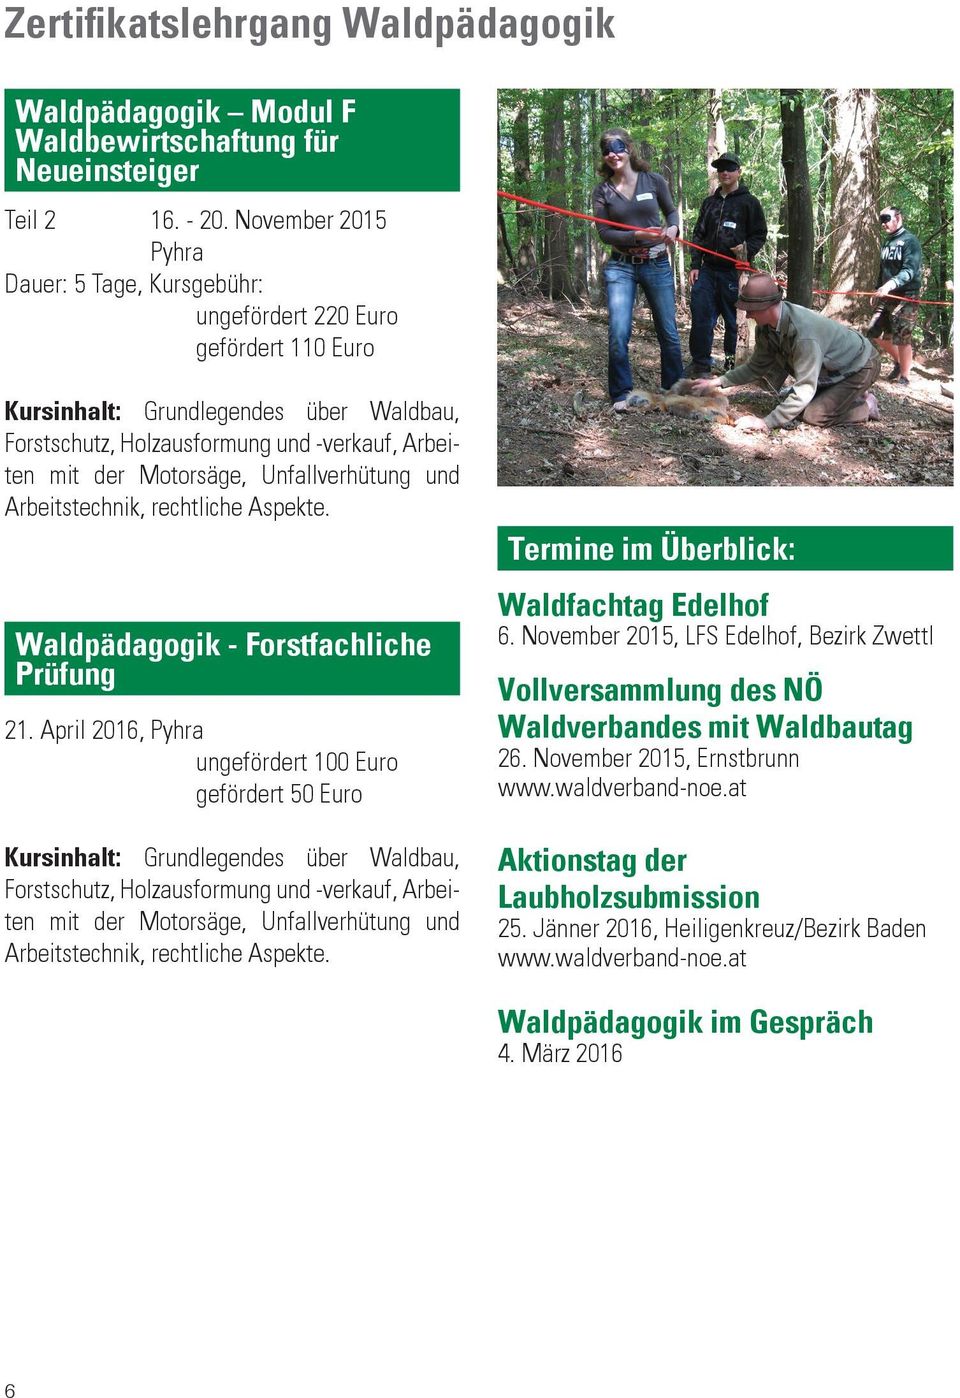 Unfallverhütung und Arbeitstechnik, rechtliche Aspekte. Waldpädagogik - Forstfachliche Prüfung 21.